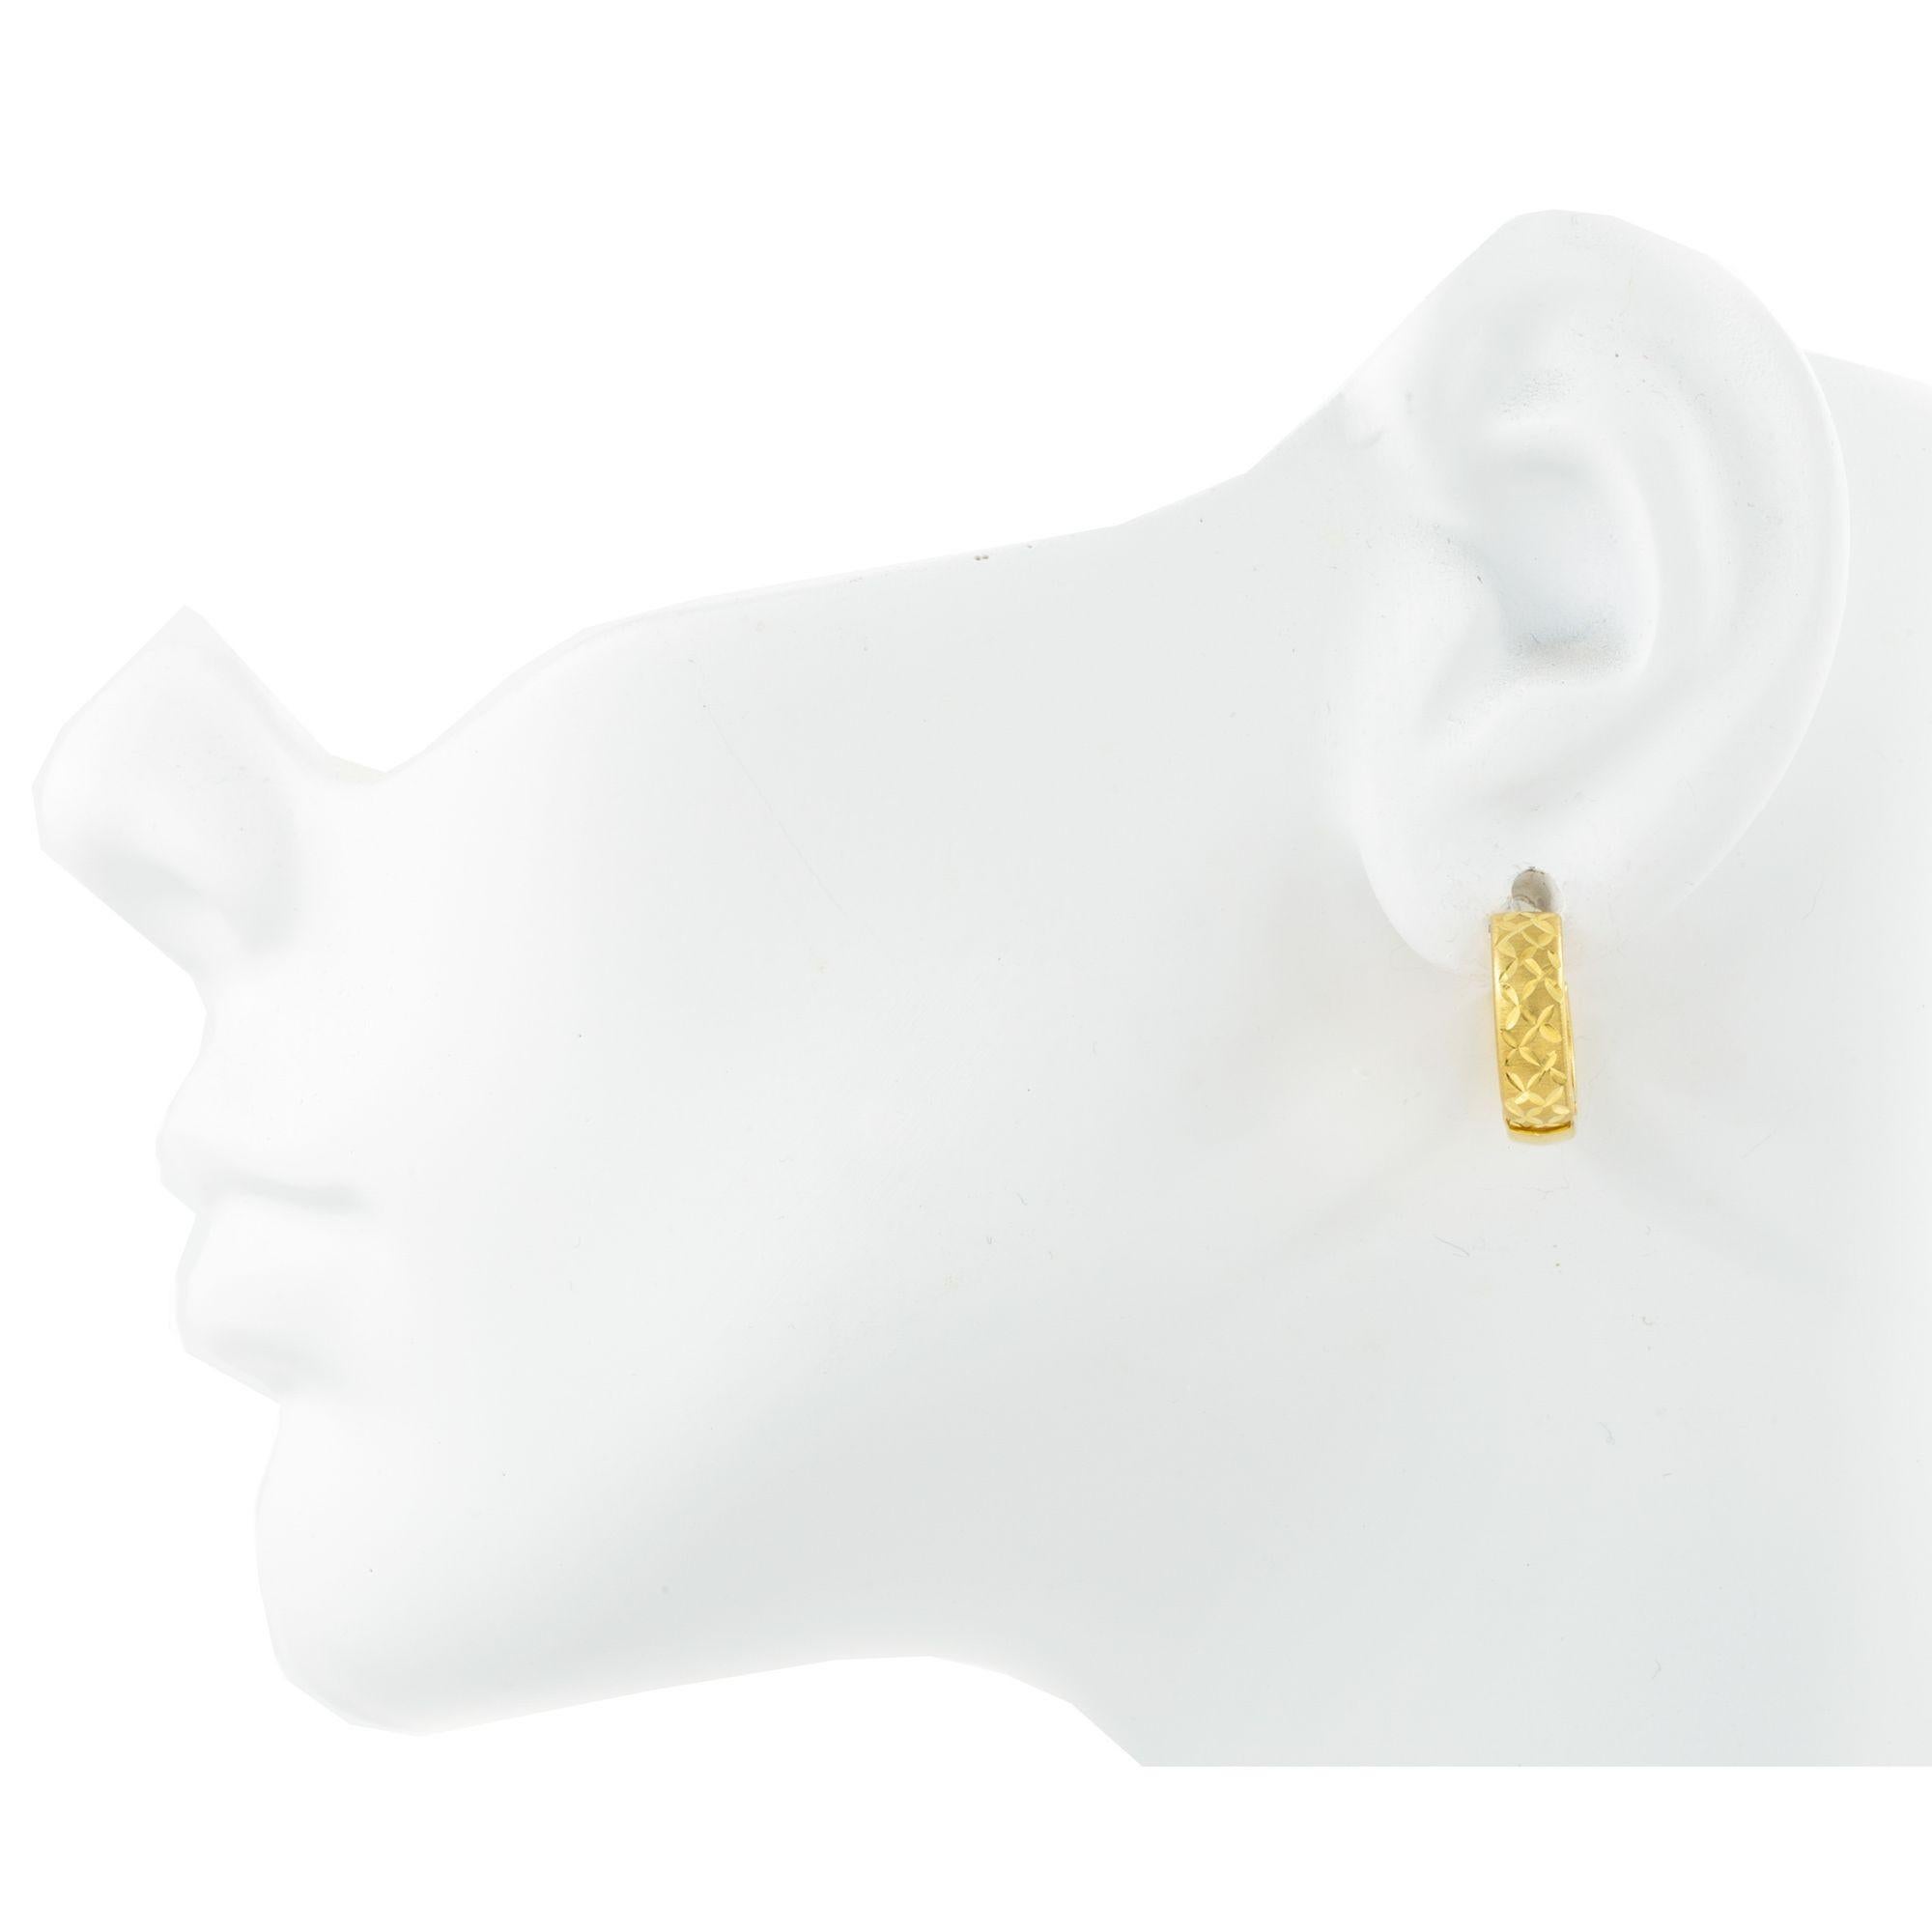 Paire de boucles d'oreilles en or jaune 18K gravées
Article # C104605

Paire de boucles d'oreilles en or jaune 18 carats présentant un motif gravé. Le motif gravé dans l'or ressemble à une feuille, ce qui ajoute de la texture et de l'intérêt visuel